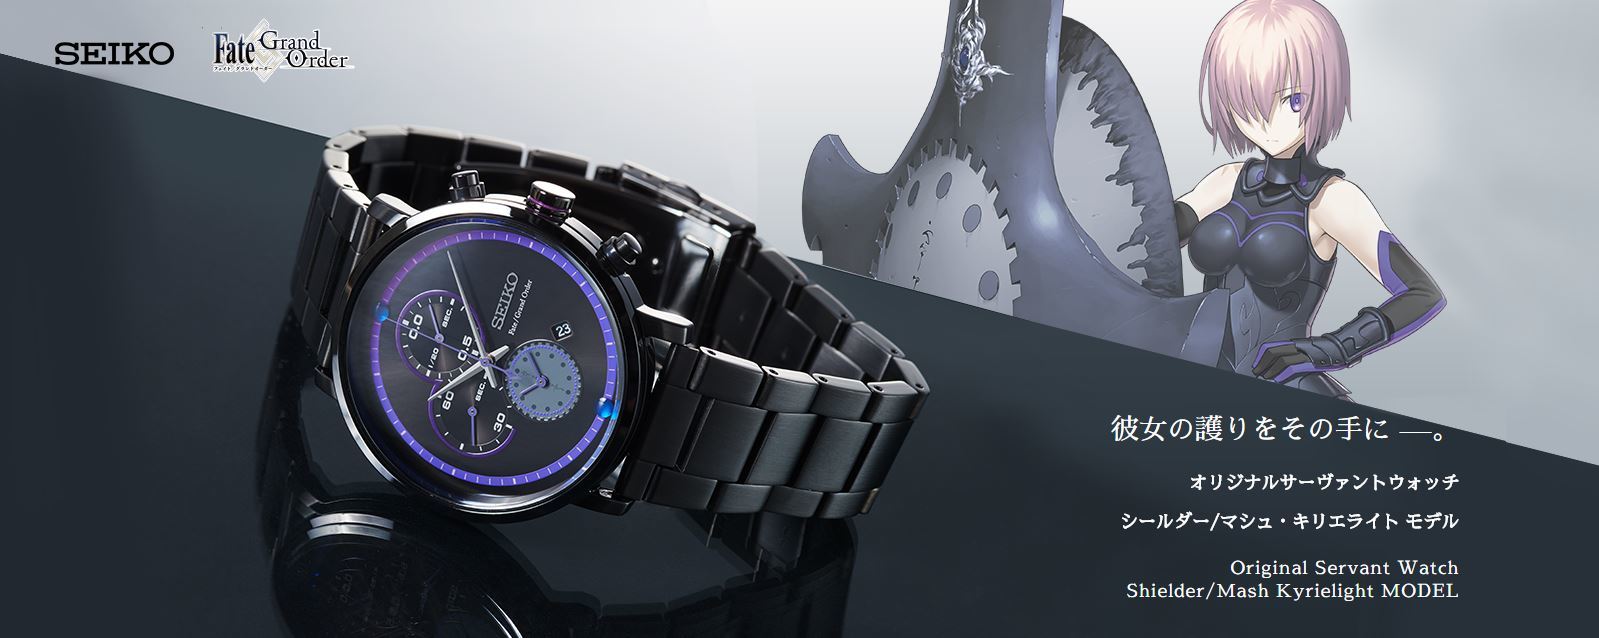 Fate/Grand Order』×SEIKOコラボ腕時計第2弾『マシュ・キリエライト モデル』が発売へ 盾や妖精文字をとり入れたデザイン |  SPICE - エンタメ特化型情報メディア スパイス